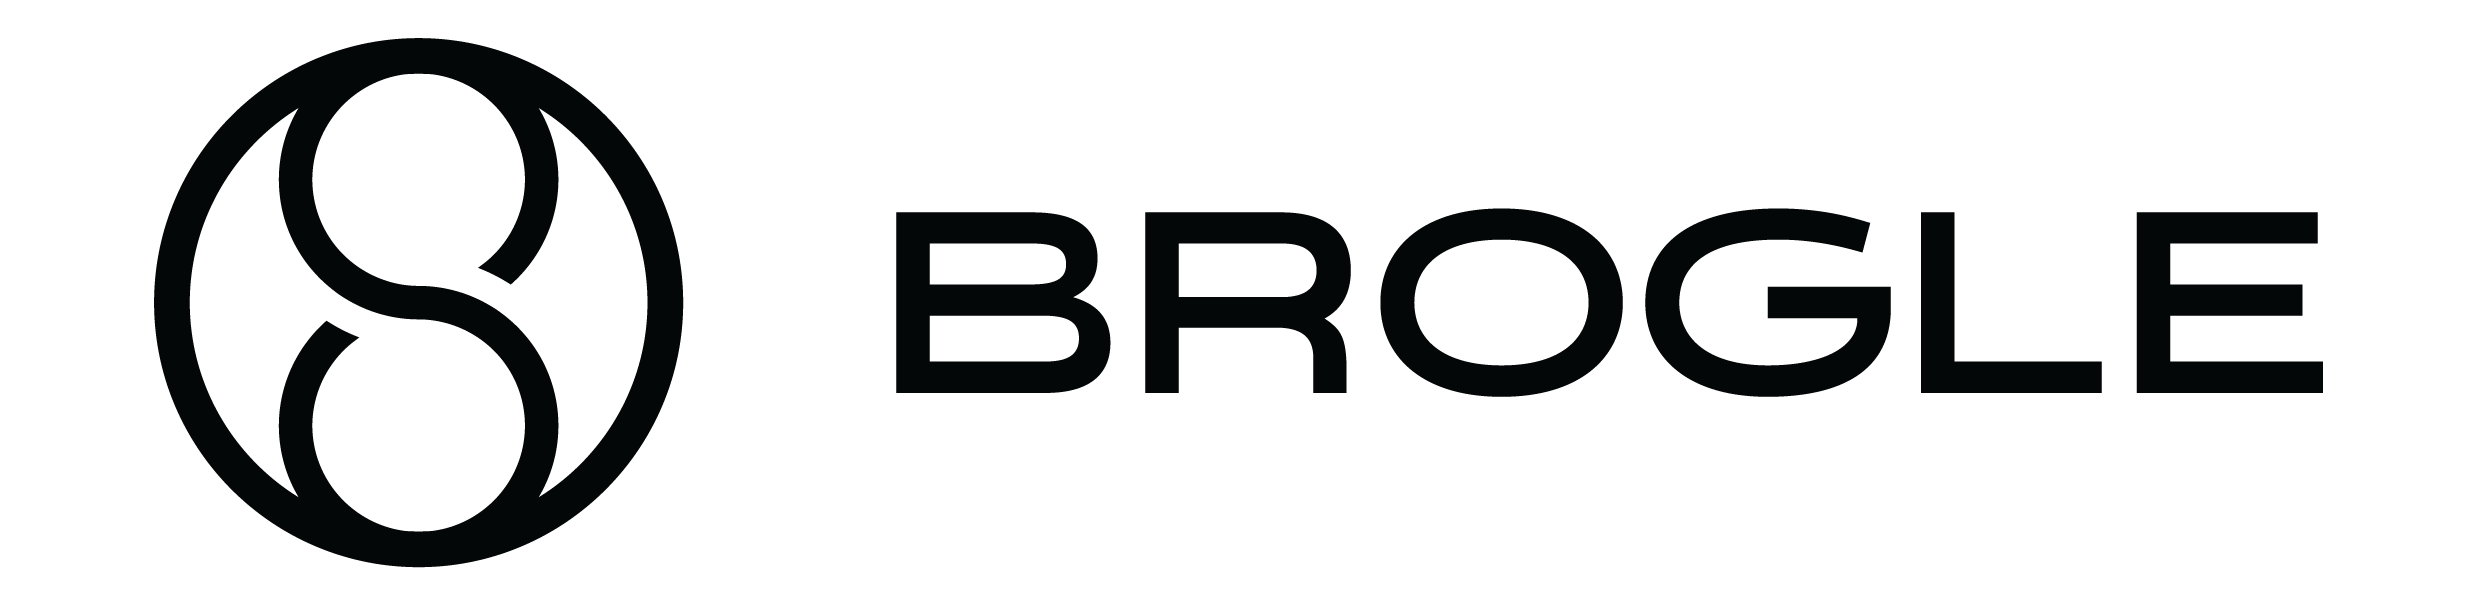 Brogle logo horizontal schwarz